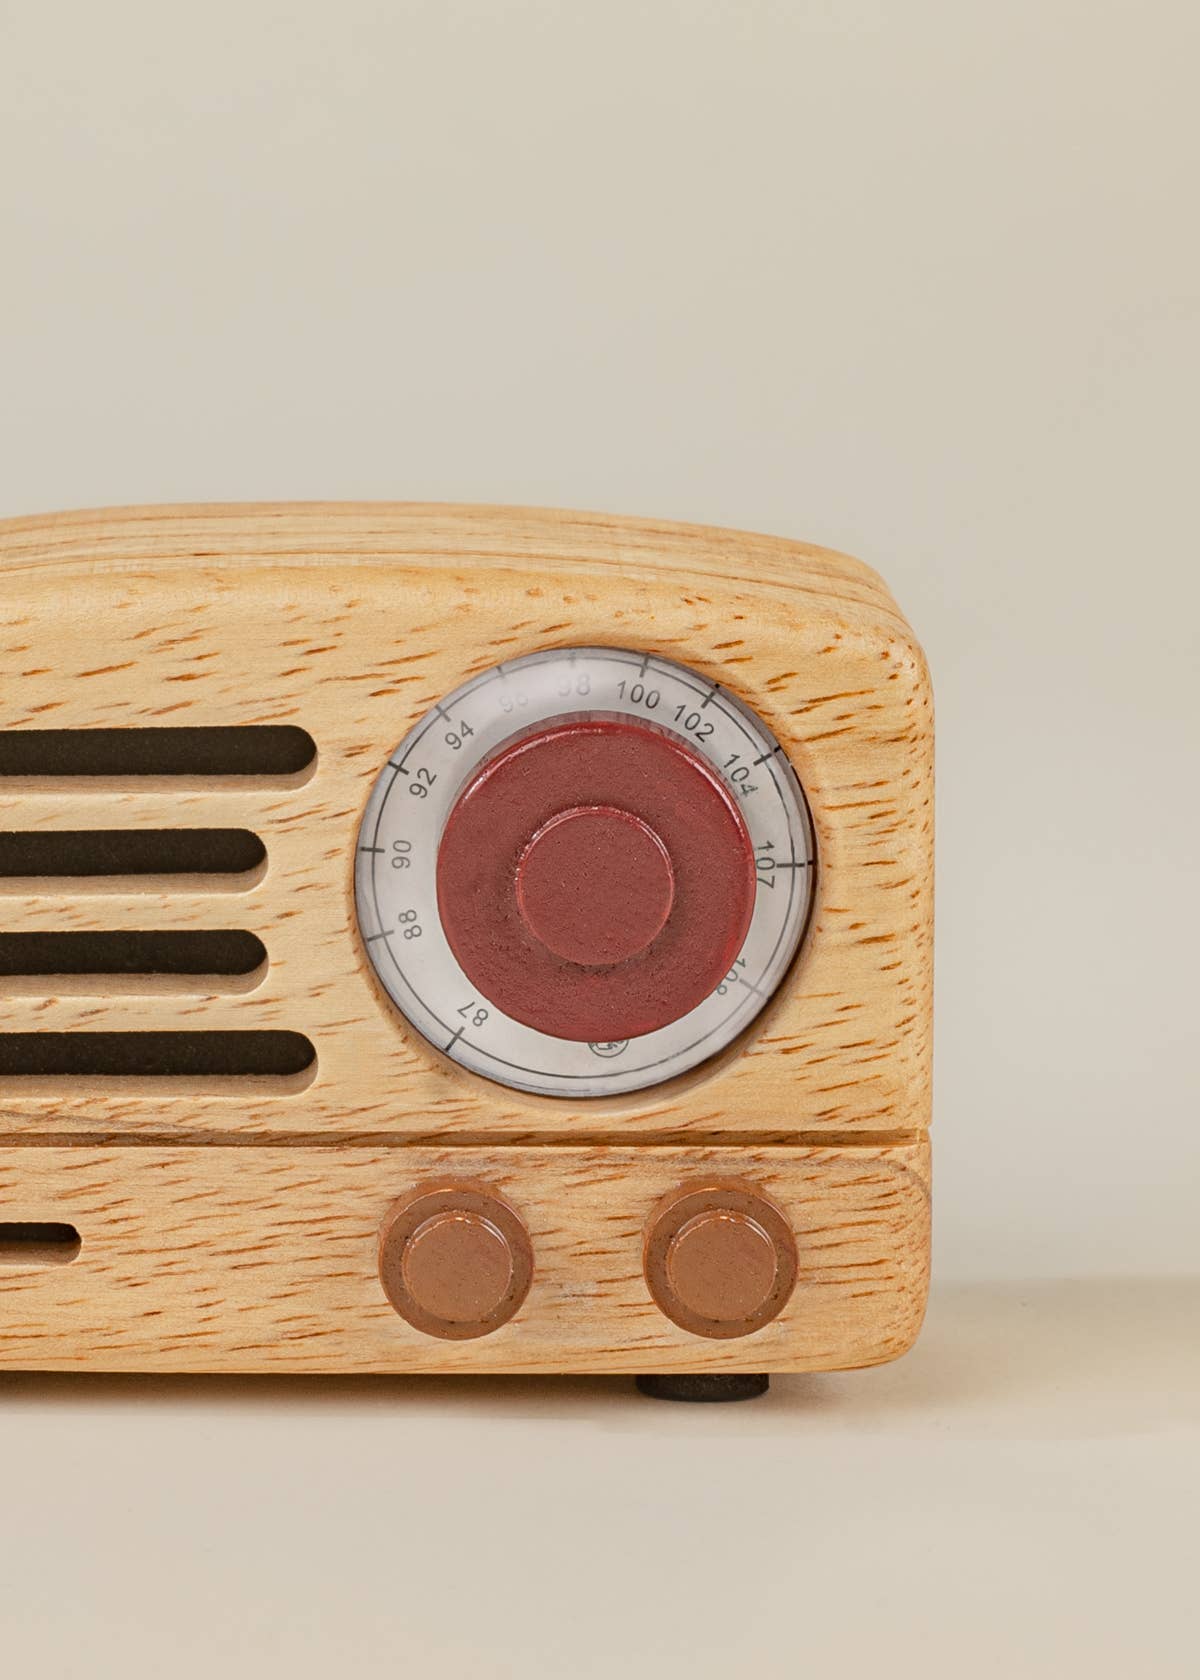 Vintage Looking OTR Wood Portable Radio Bluetooth Speaker